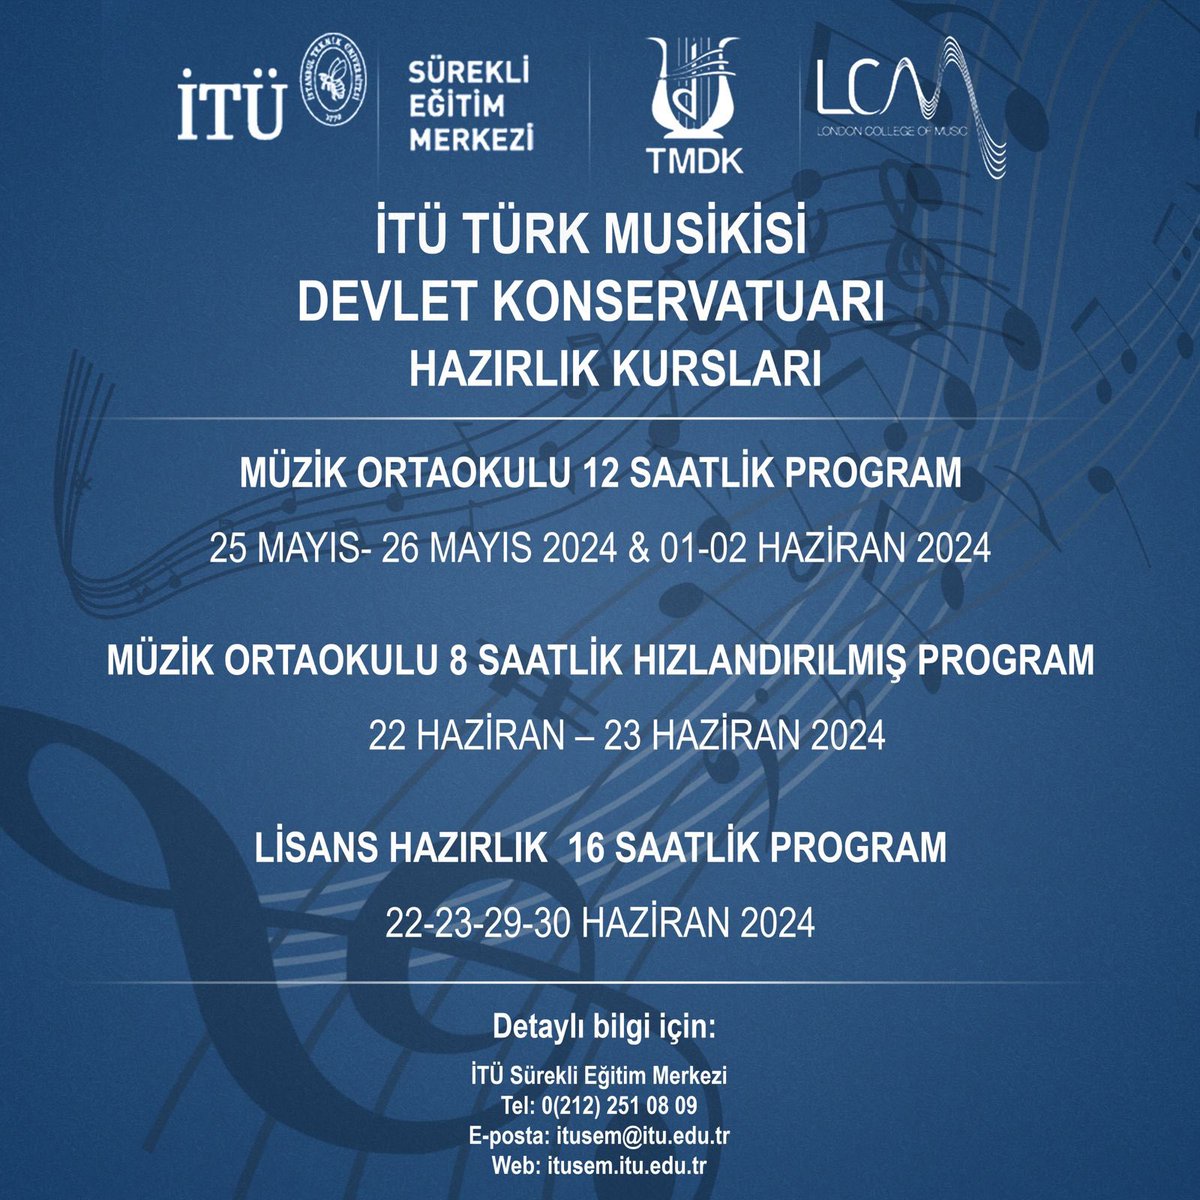 İTÜ Türk Musikisi Devlet Konservatuarı hazırlık kursları başlıyor. 🎼🎶